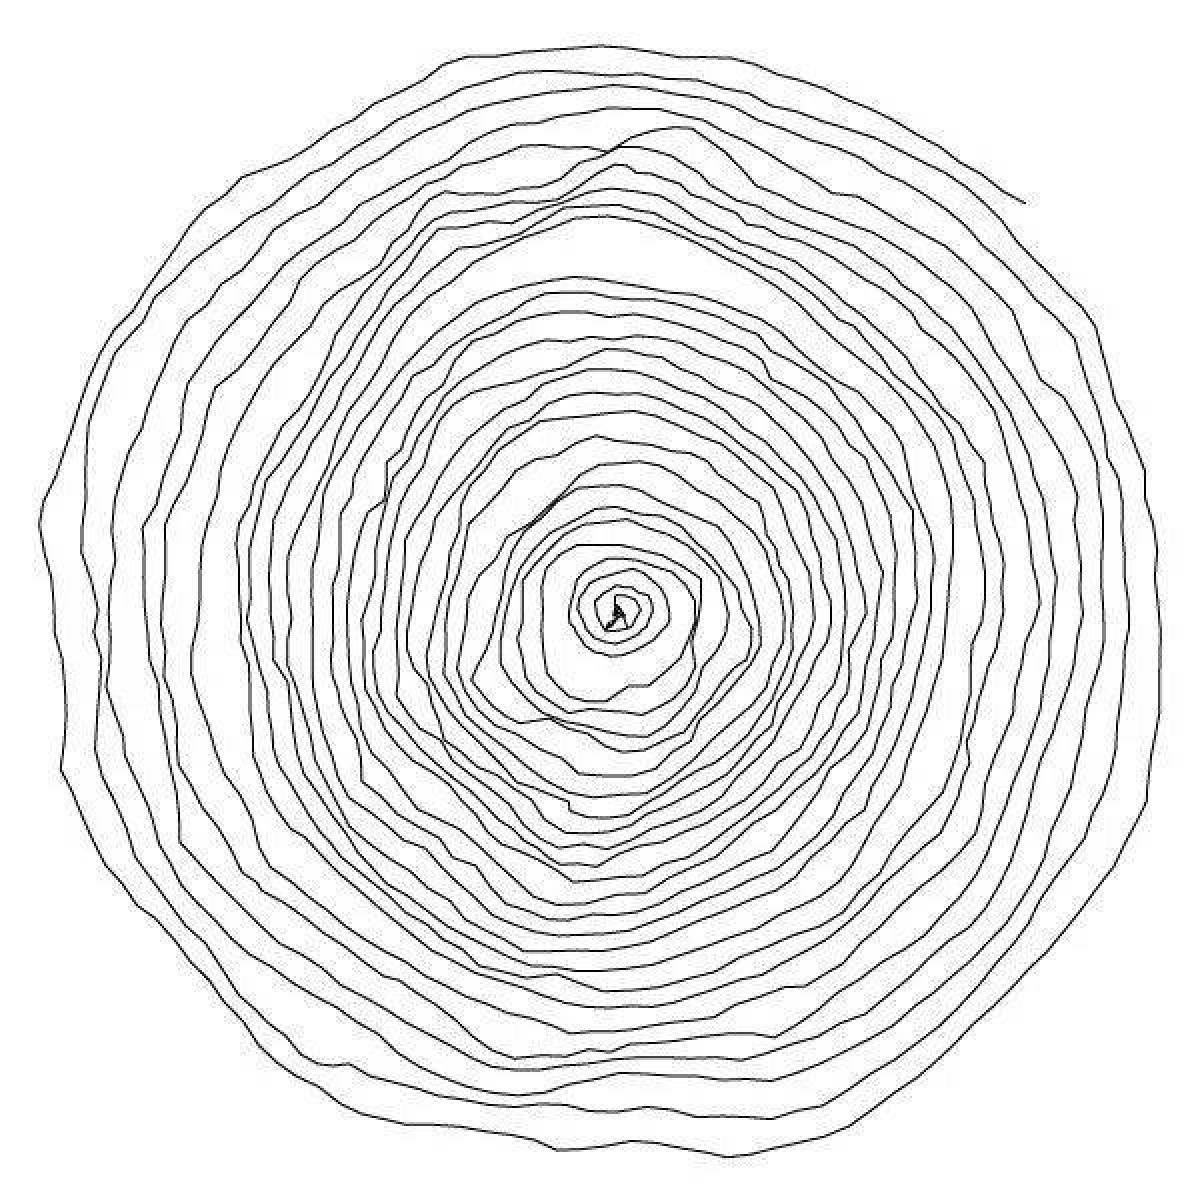 Charming spiral portrait